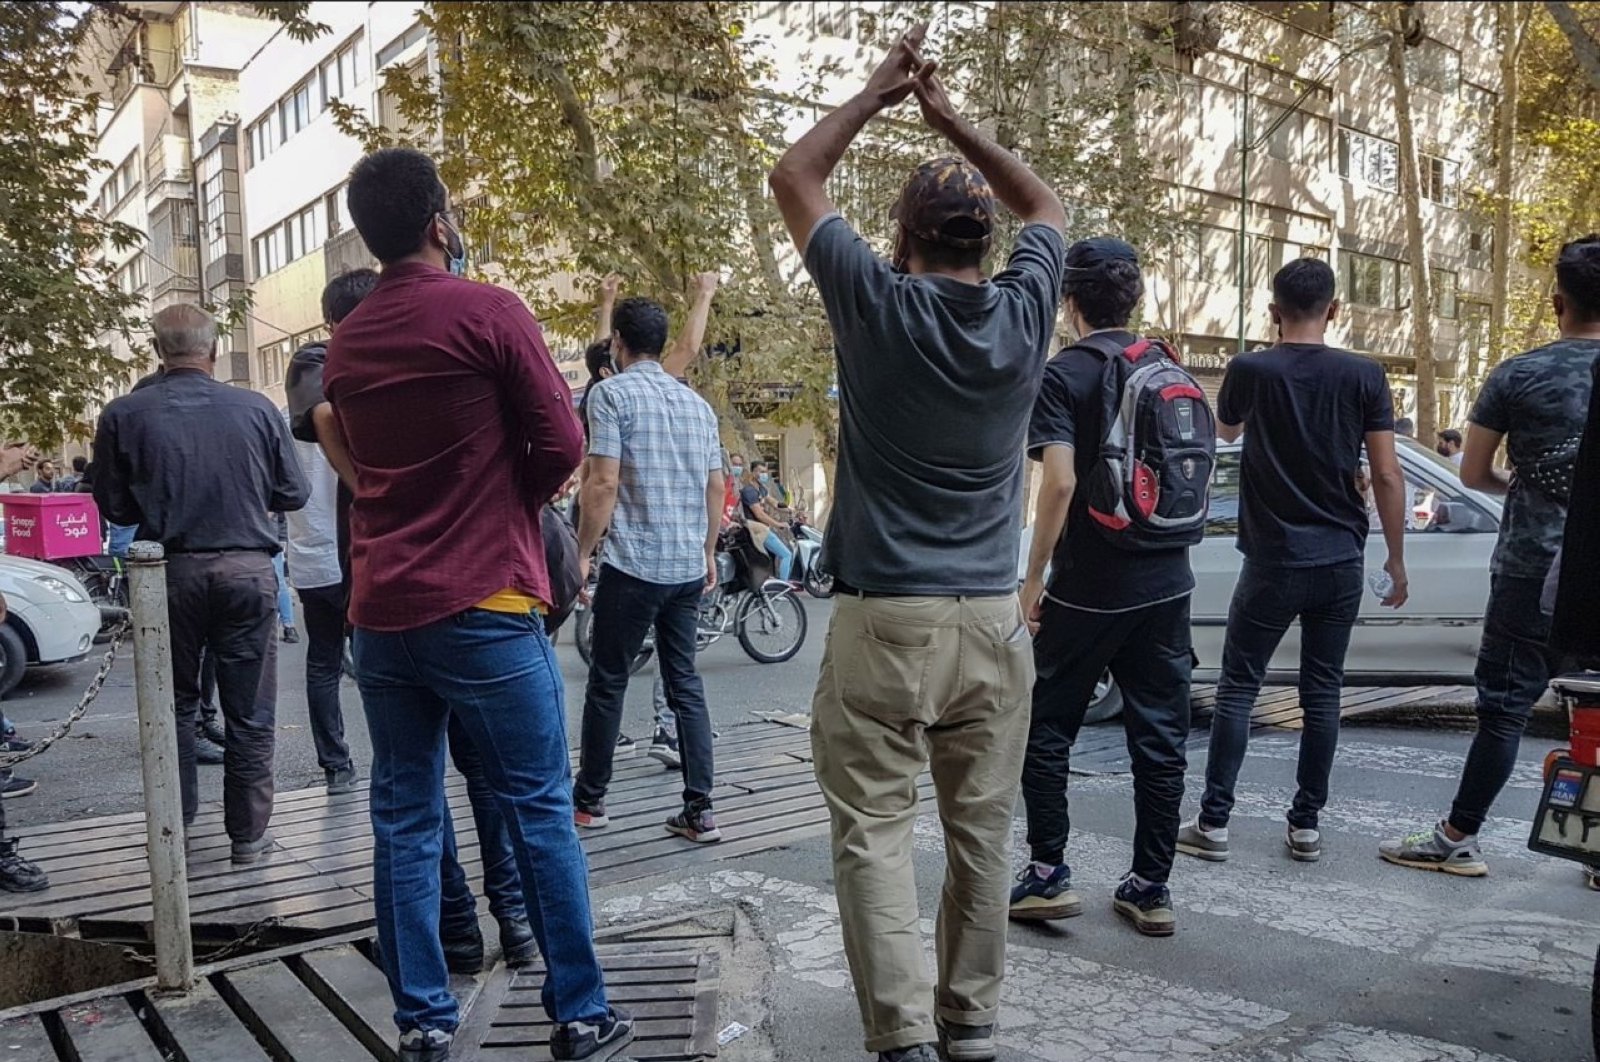 ‘Bom waktu’: Kemarahan meningkat di titik panas demonstrasi Iran